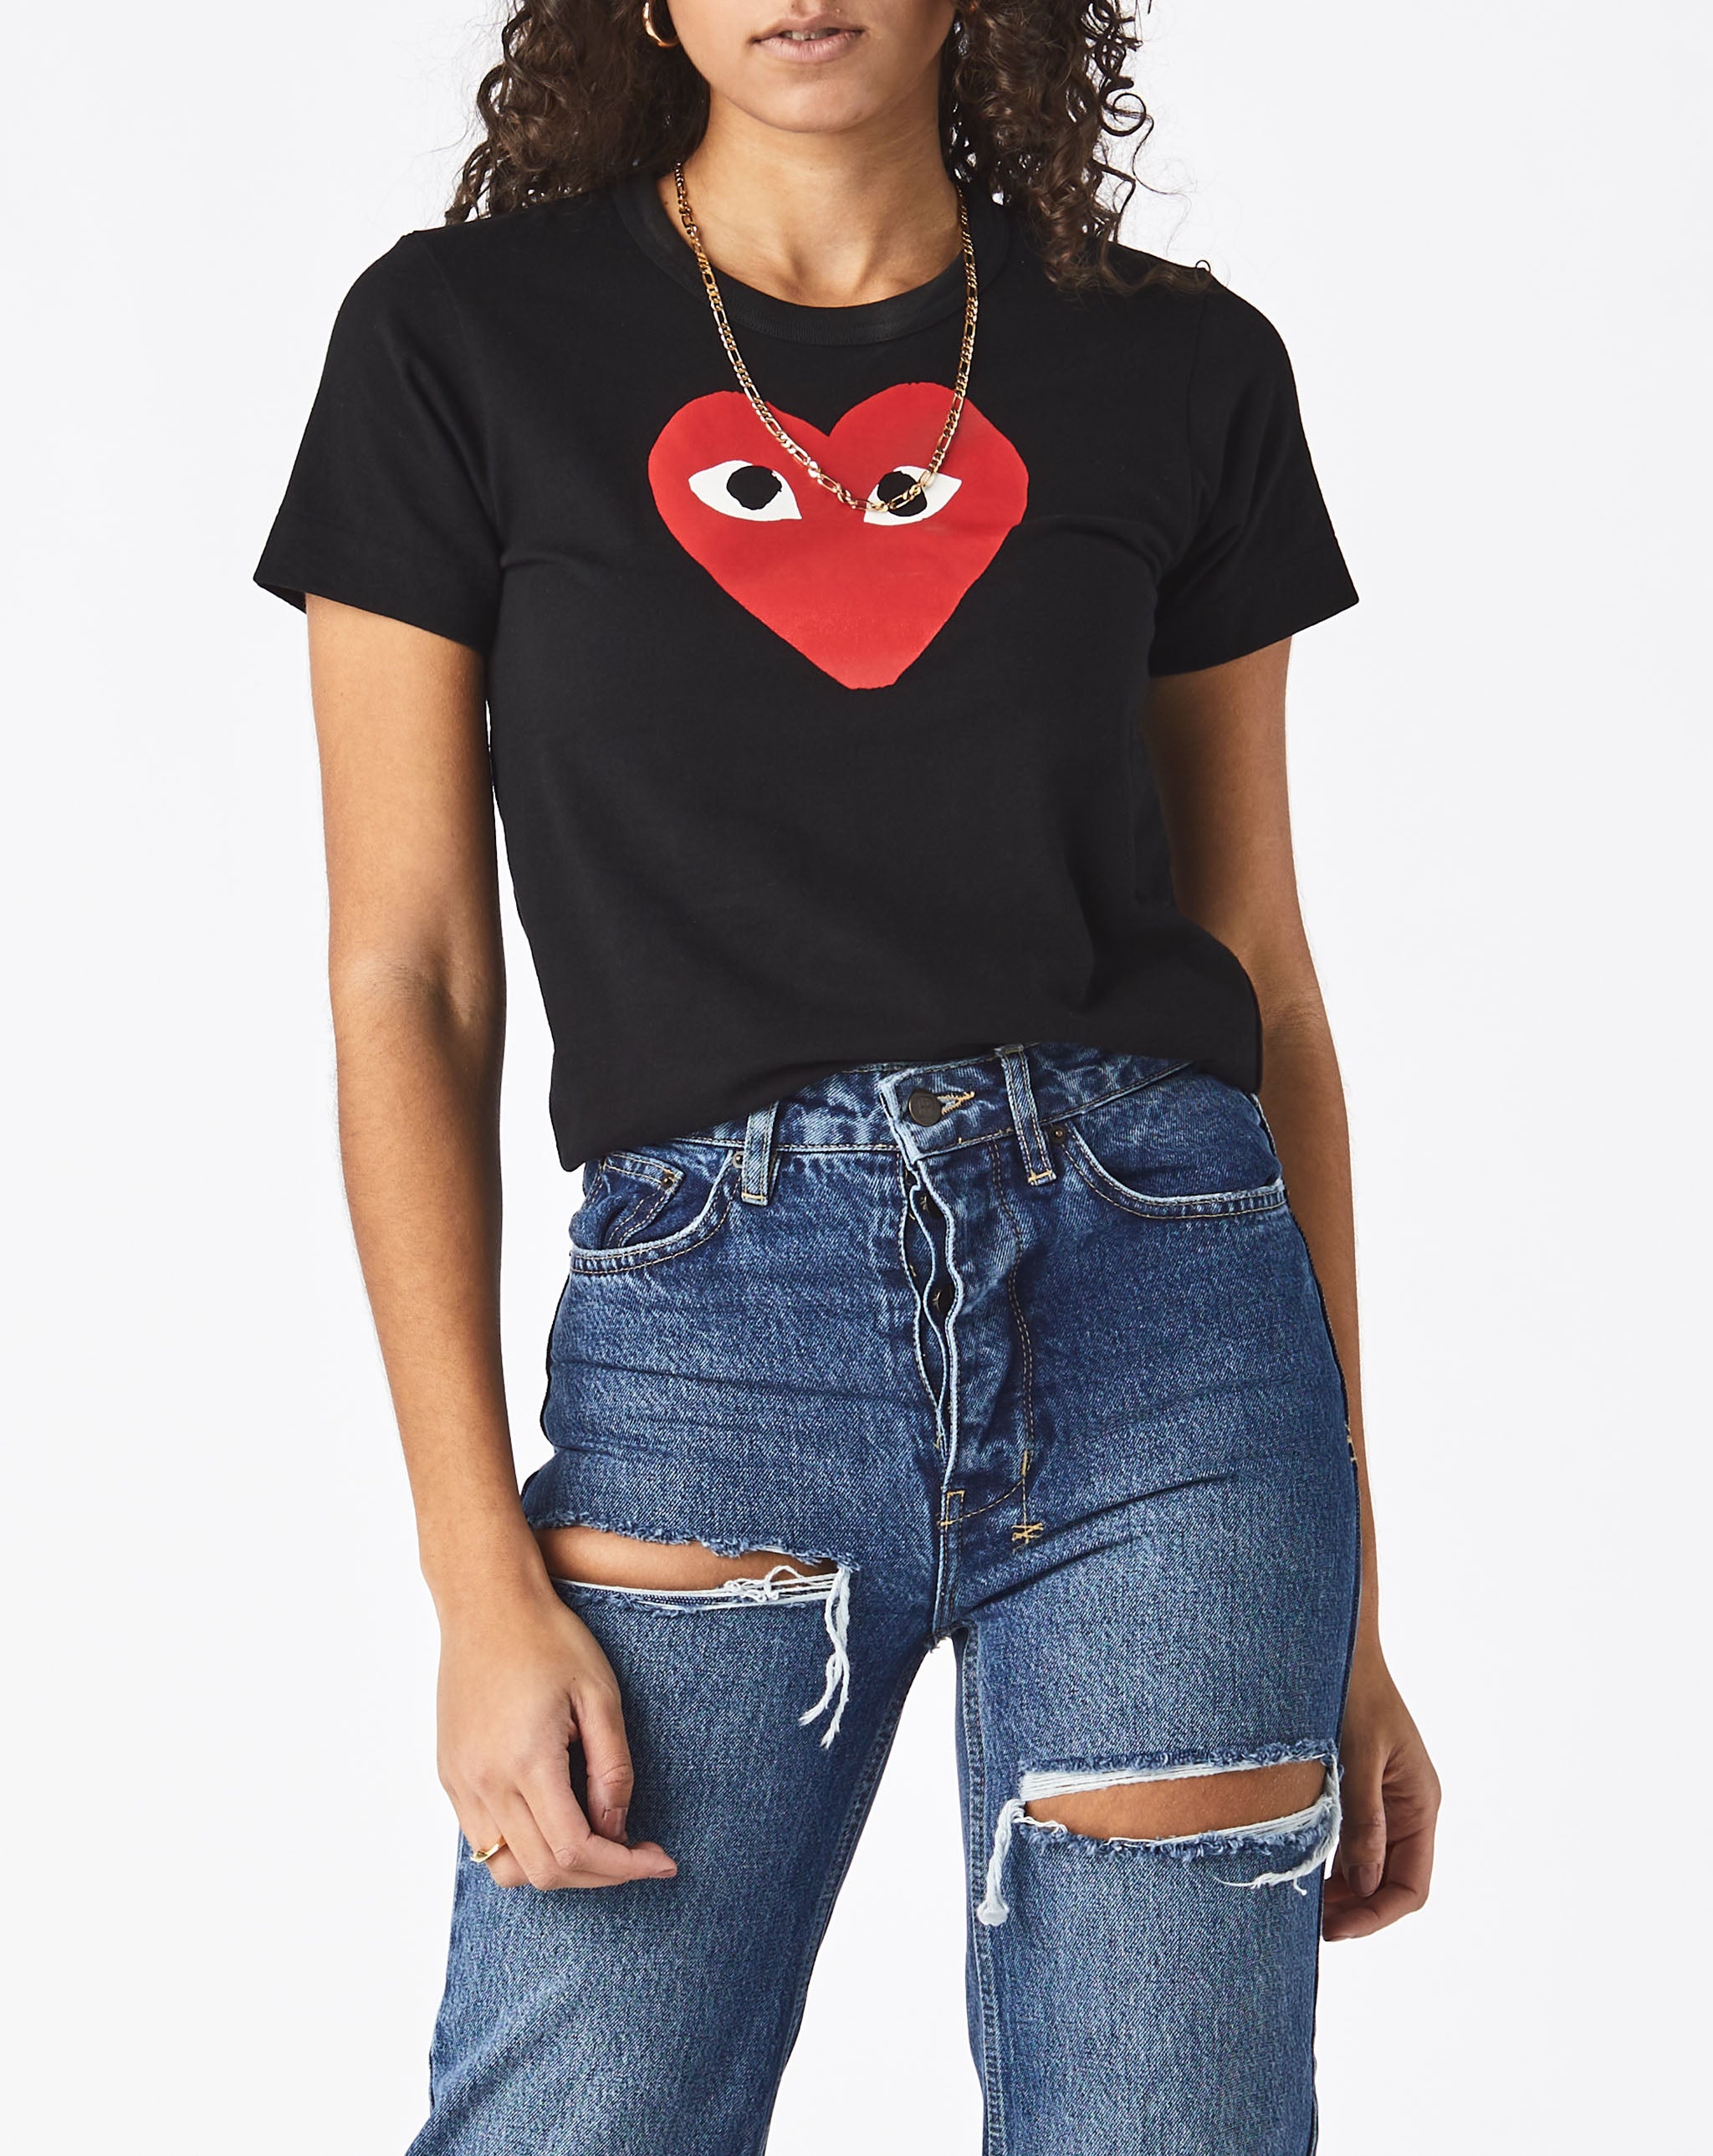 Womens Heart T-Shirt Women's Play T-Shirt  - Cheap Urlfreeze Jordan outlet